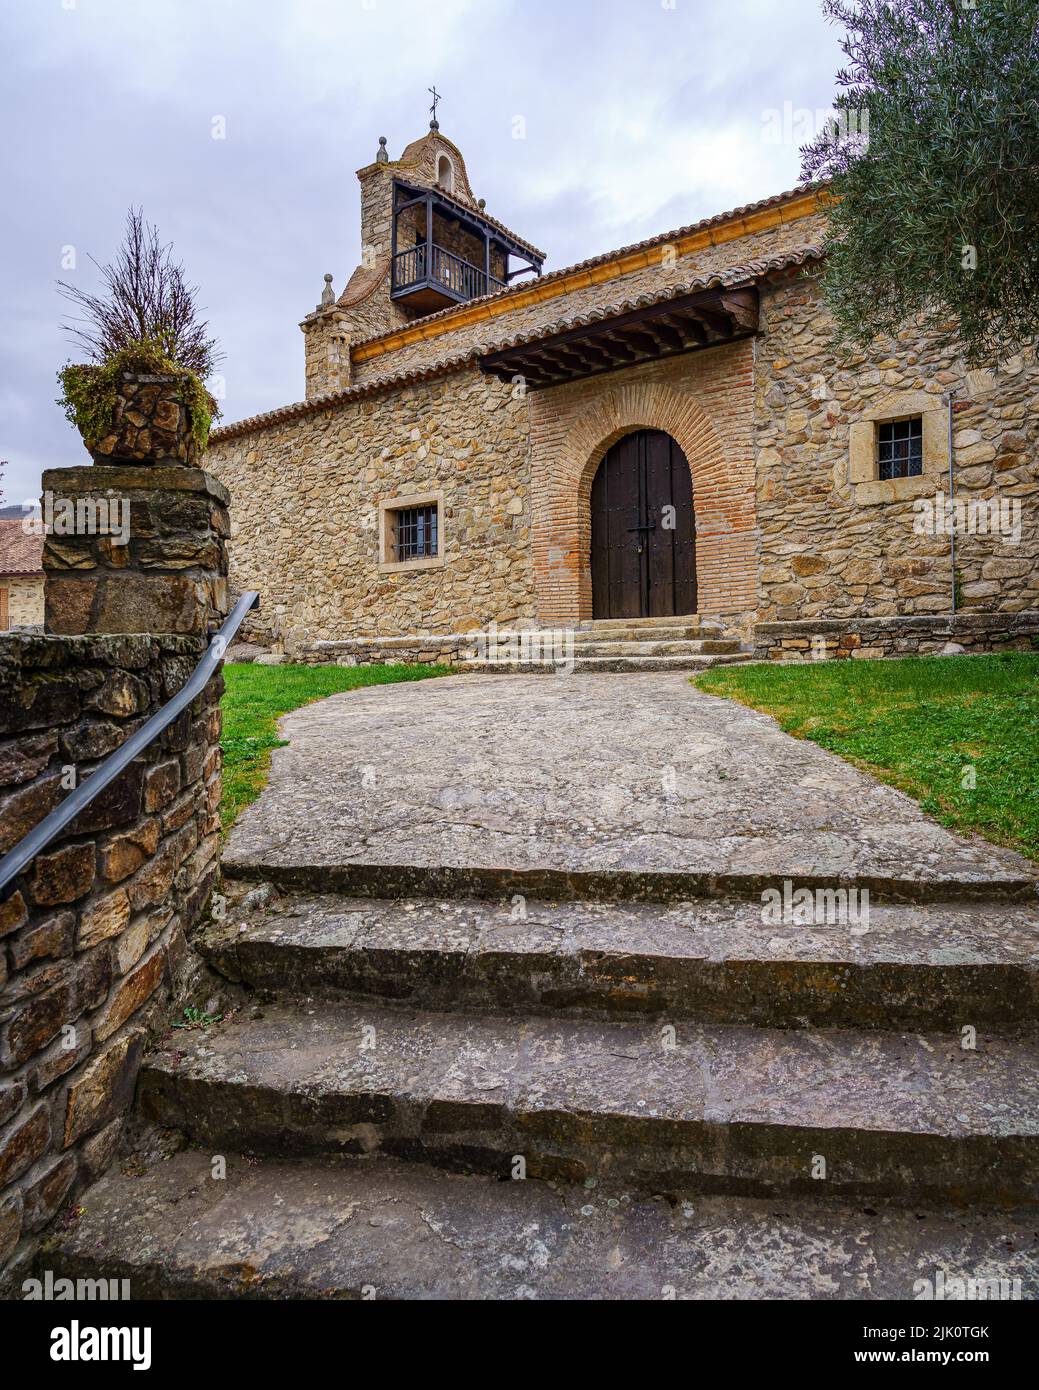 Antica chiesa medievale in pietra con accesso scala e torre con balcone. Horcajuelo Madrid. Spagna. Foto Stock